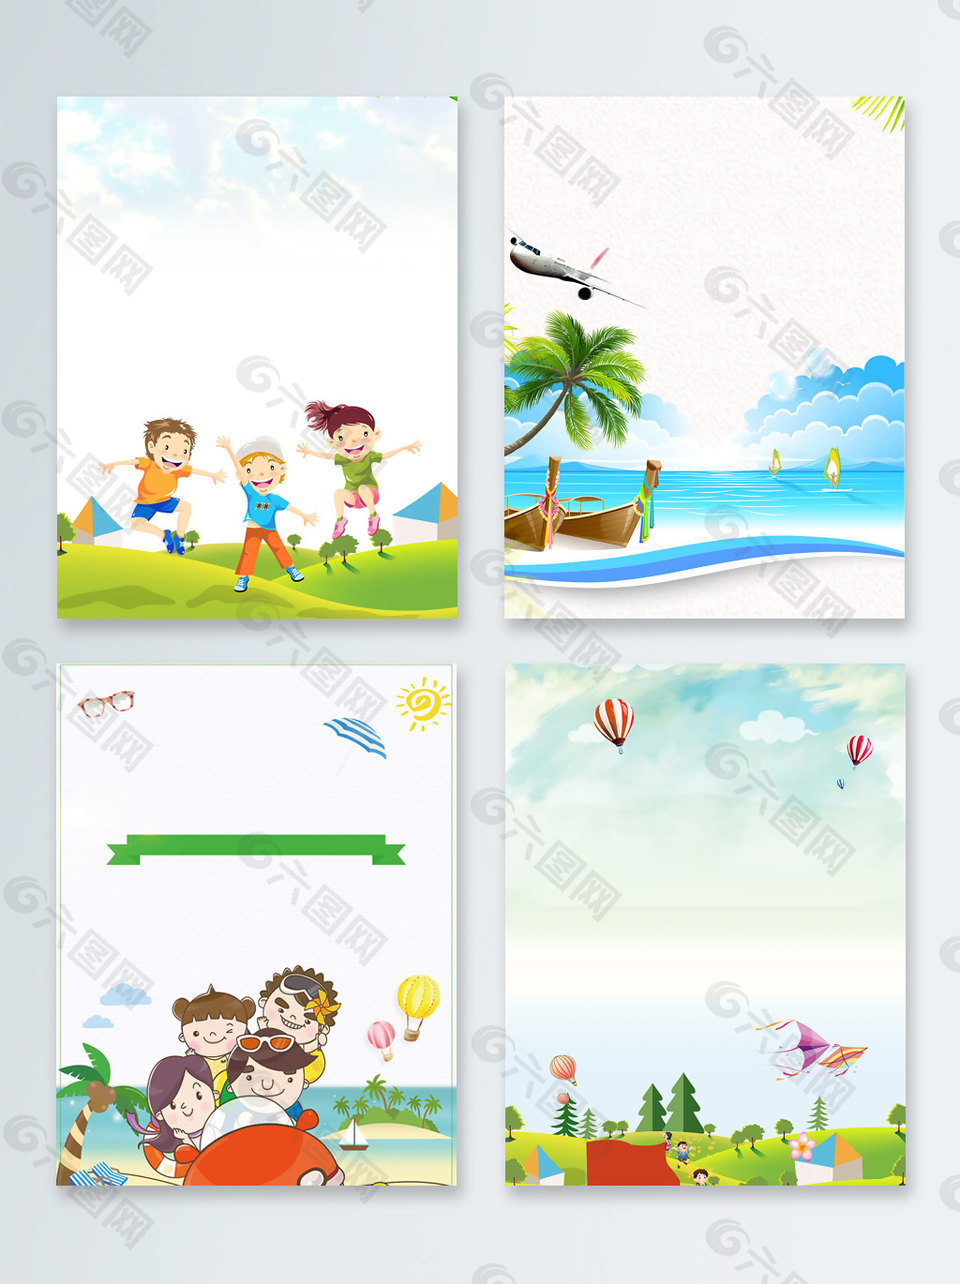 椰子树海边卡通暑期旅游广告背景图